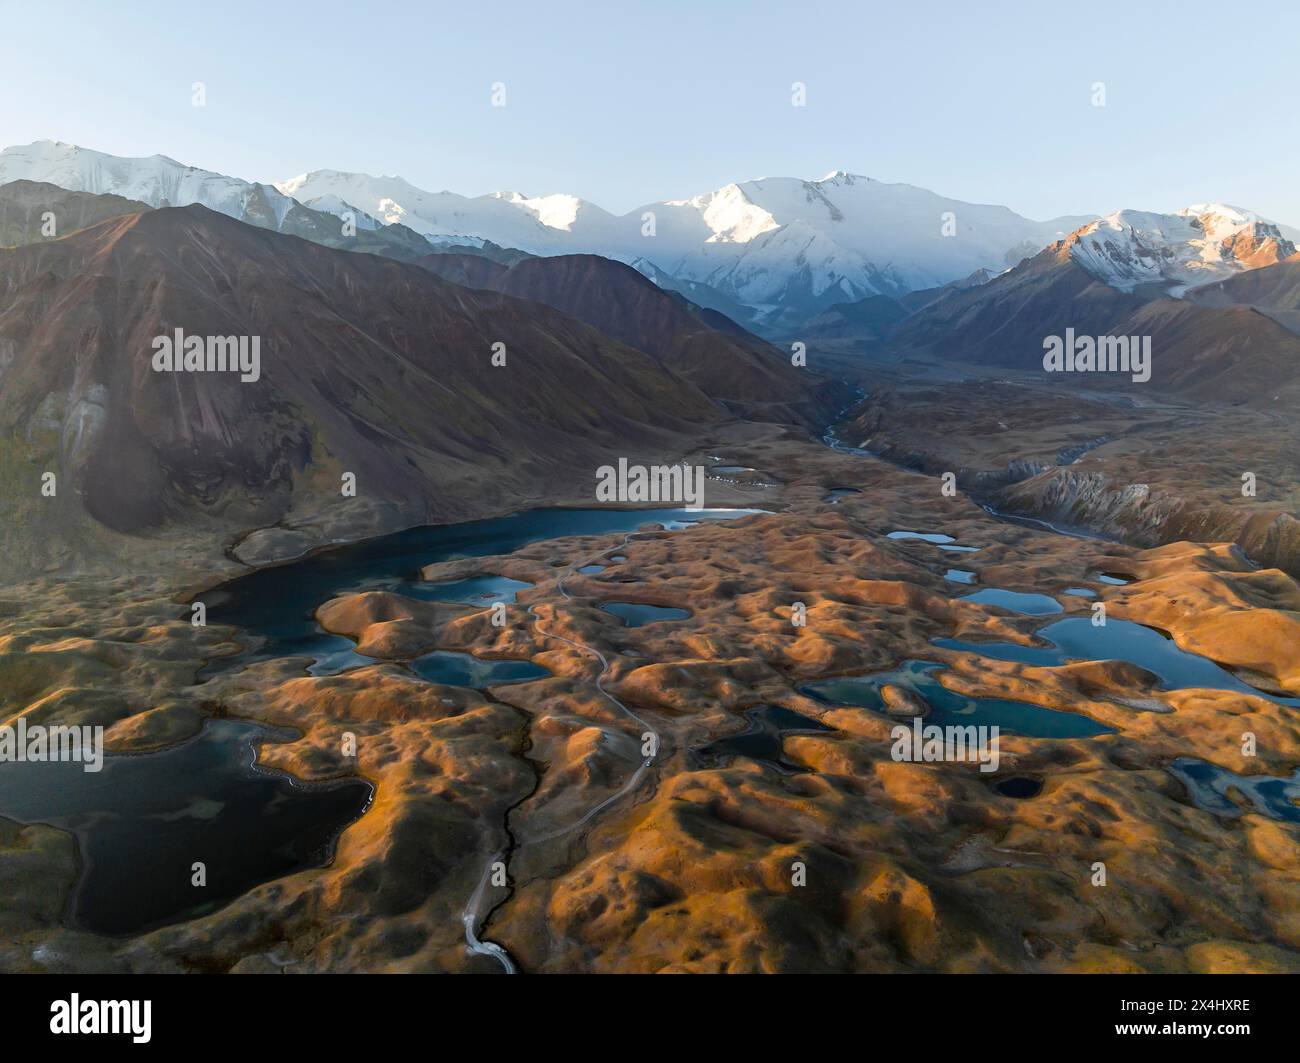 Stimmungsvolle Aussicht aus der Luft, Hochgebirgslandschaft mit Gletschermoränen und Bergseen, hinter Pik Lenin, Trans Alay Mountains, Pamir Mountains Stockfoto